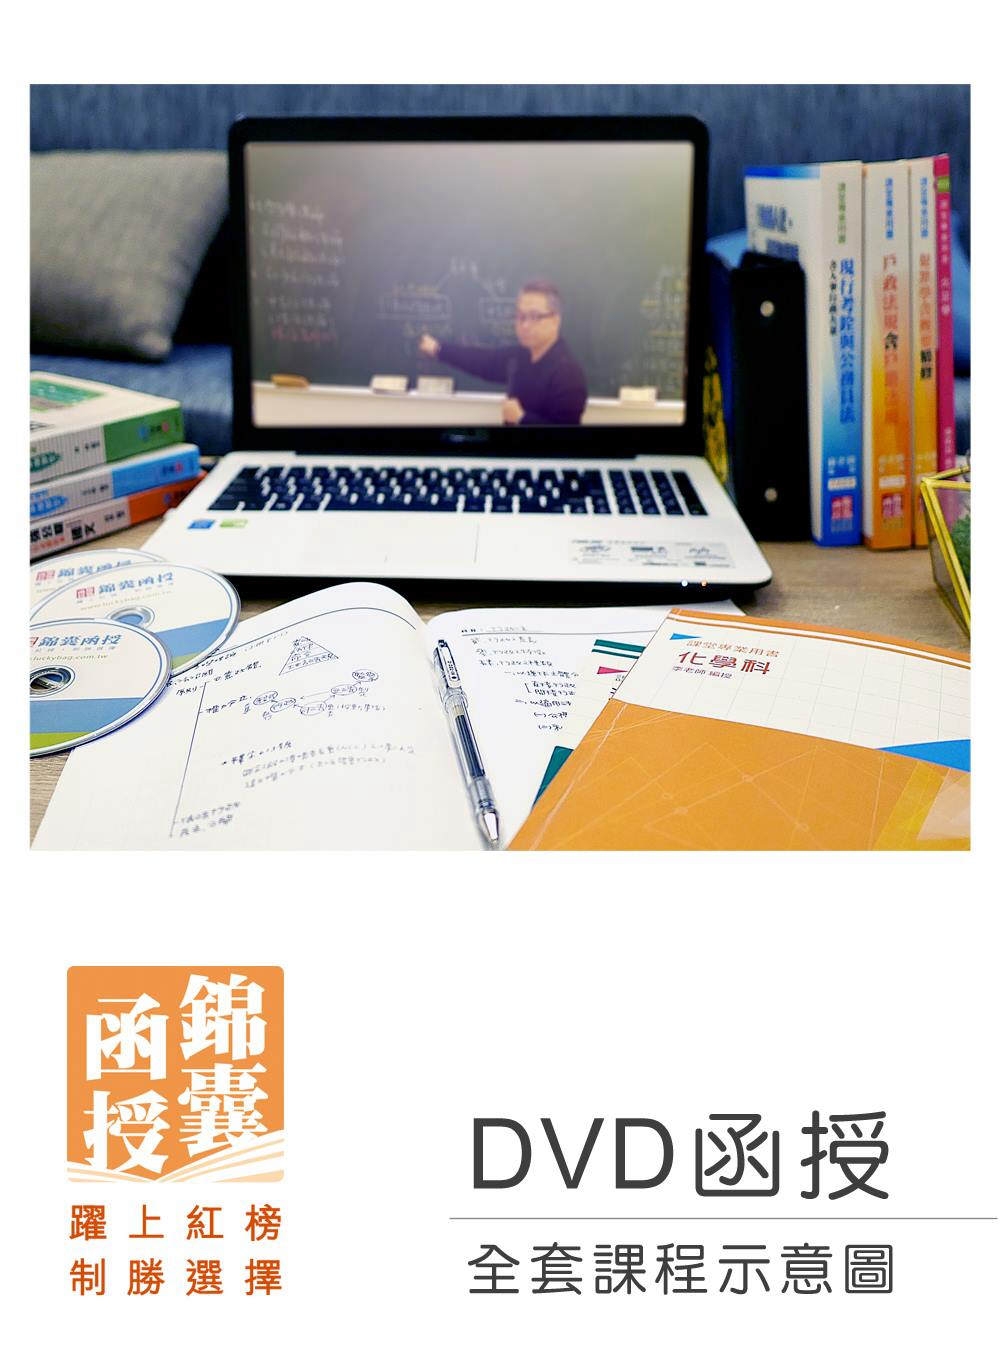 【DVD函授】111年郵局招考(專業職二-內勤)-全套課程